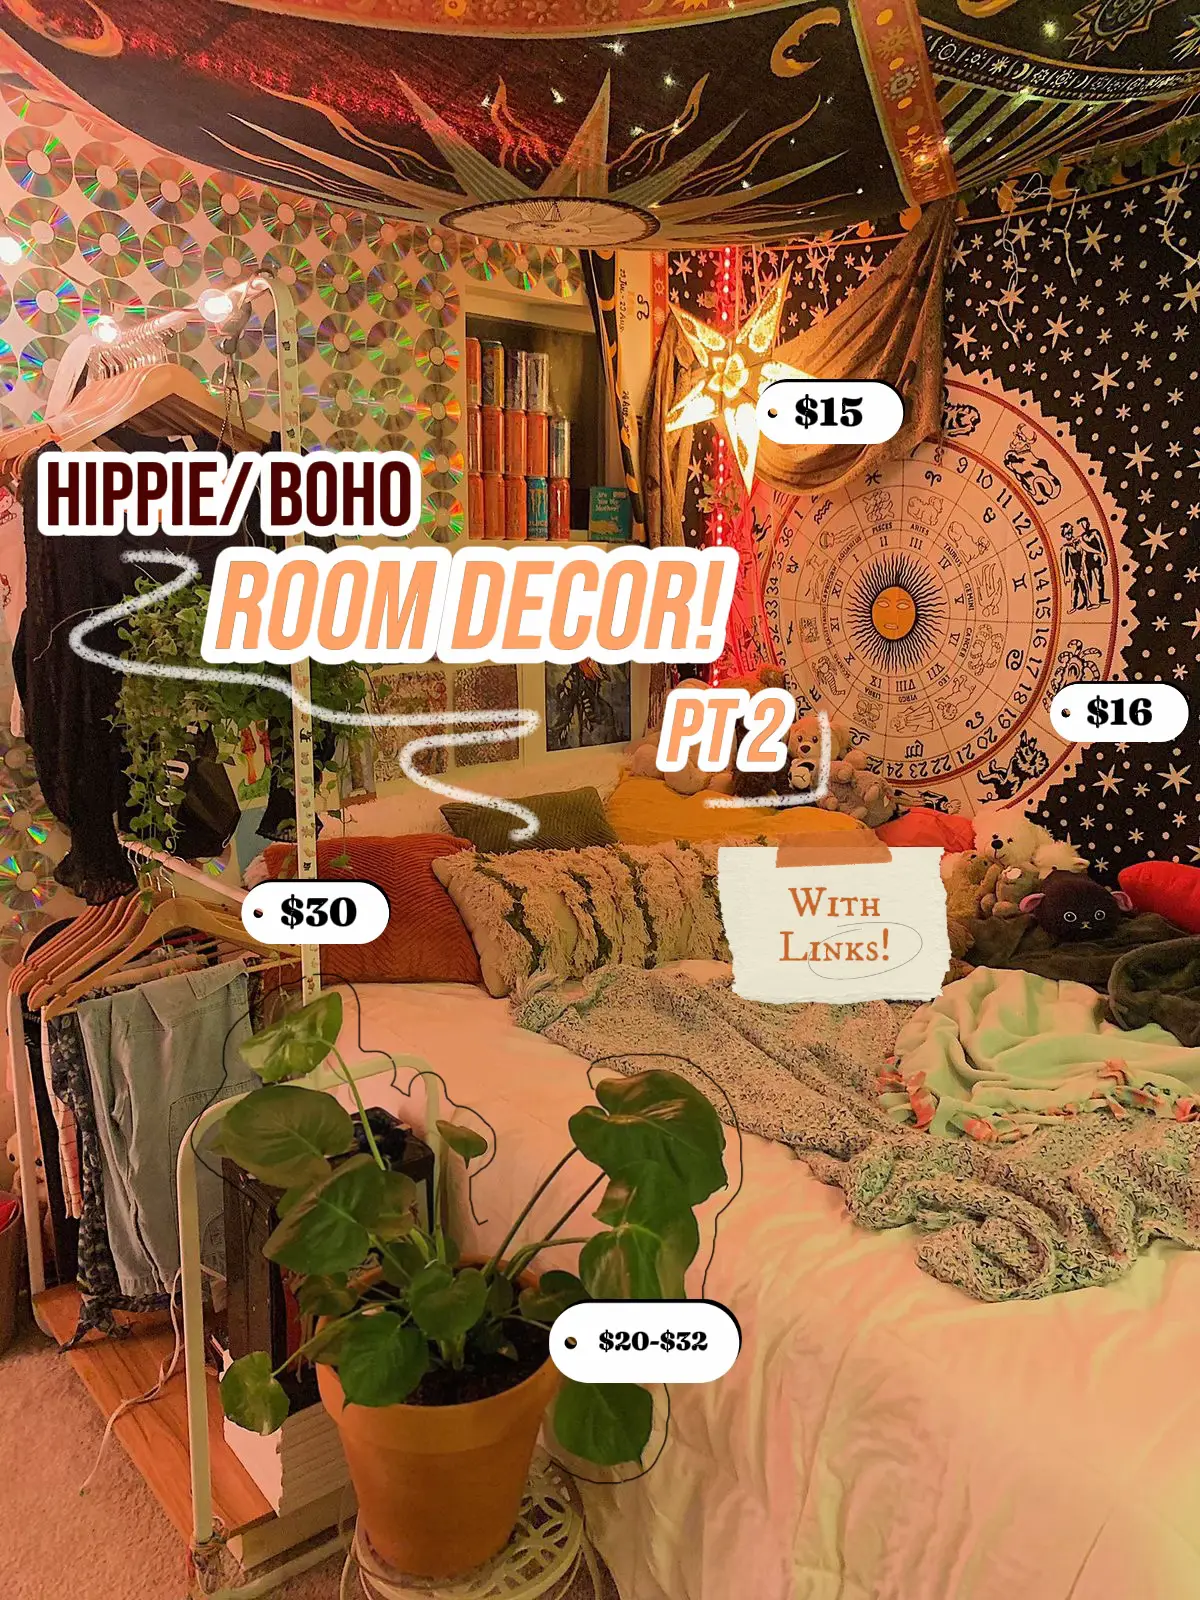 Stay Trippy Little Hippie Keychain- Hippie Gifts- Hippie Keychain